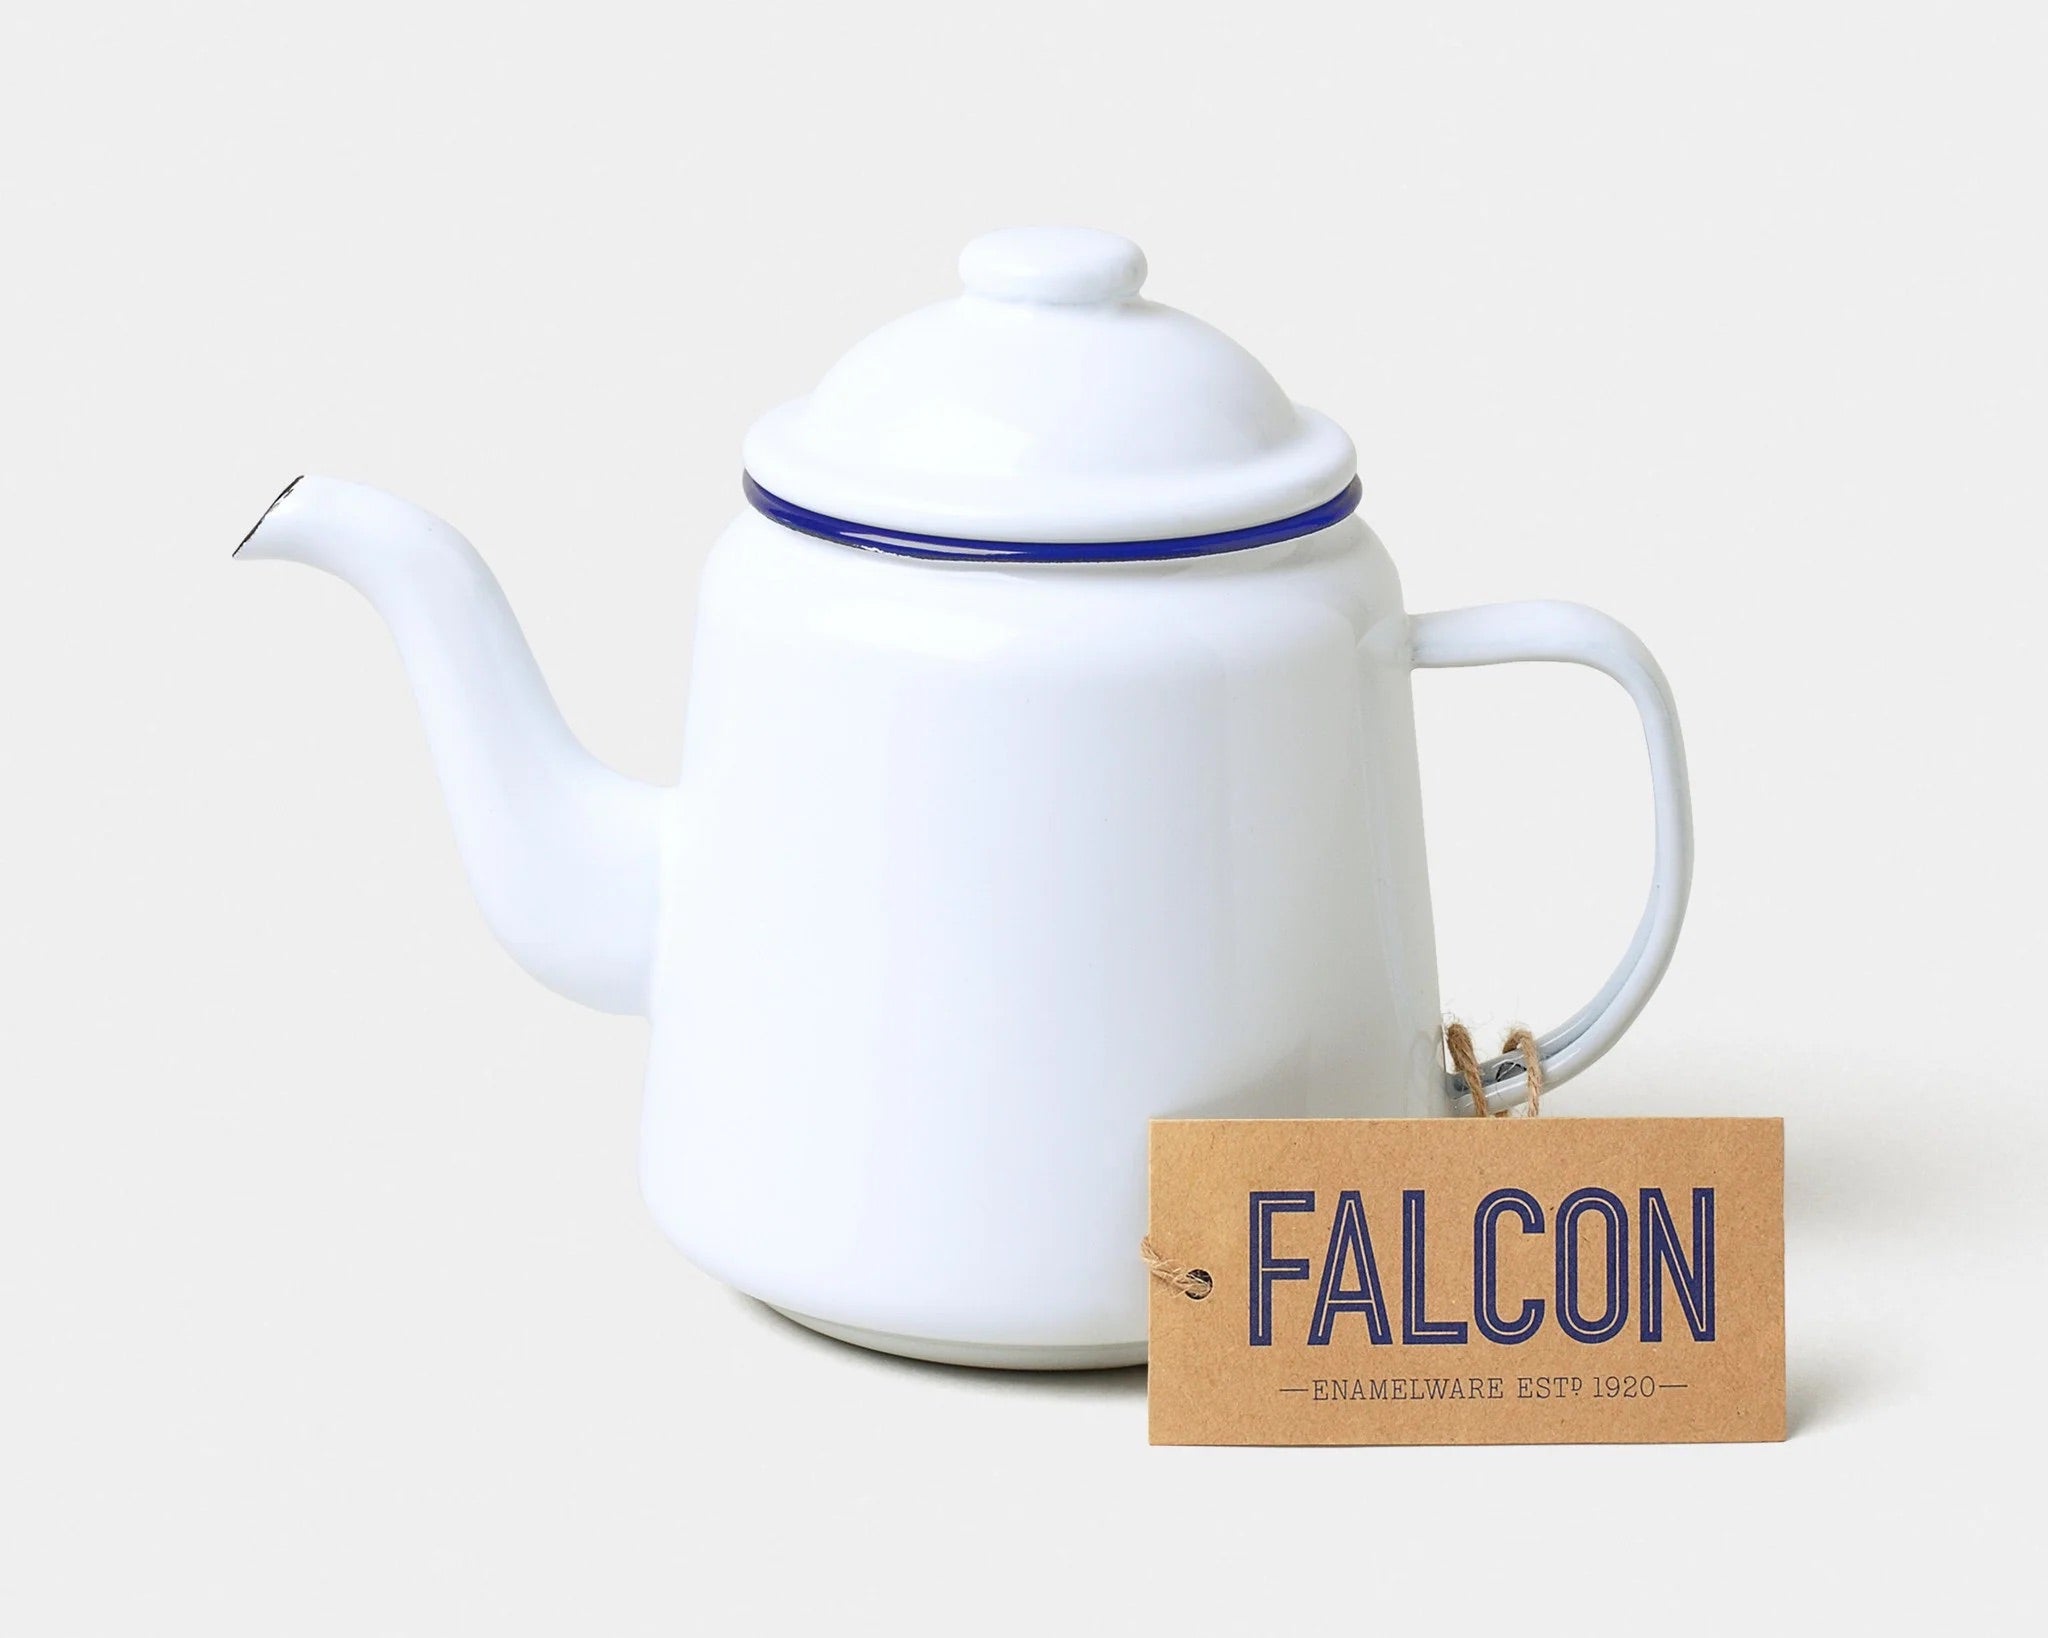  Falcon Enamel Teapot - White with Blue rim#colour_white-with-blue-rim